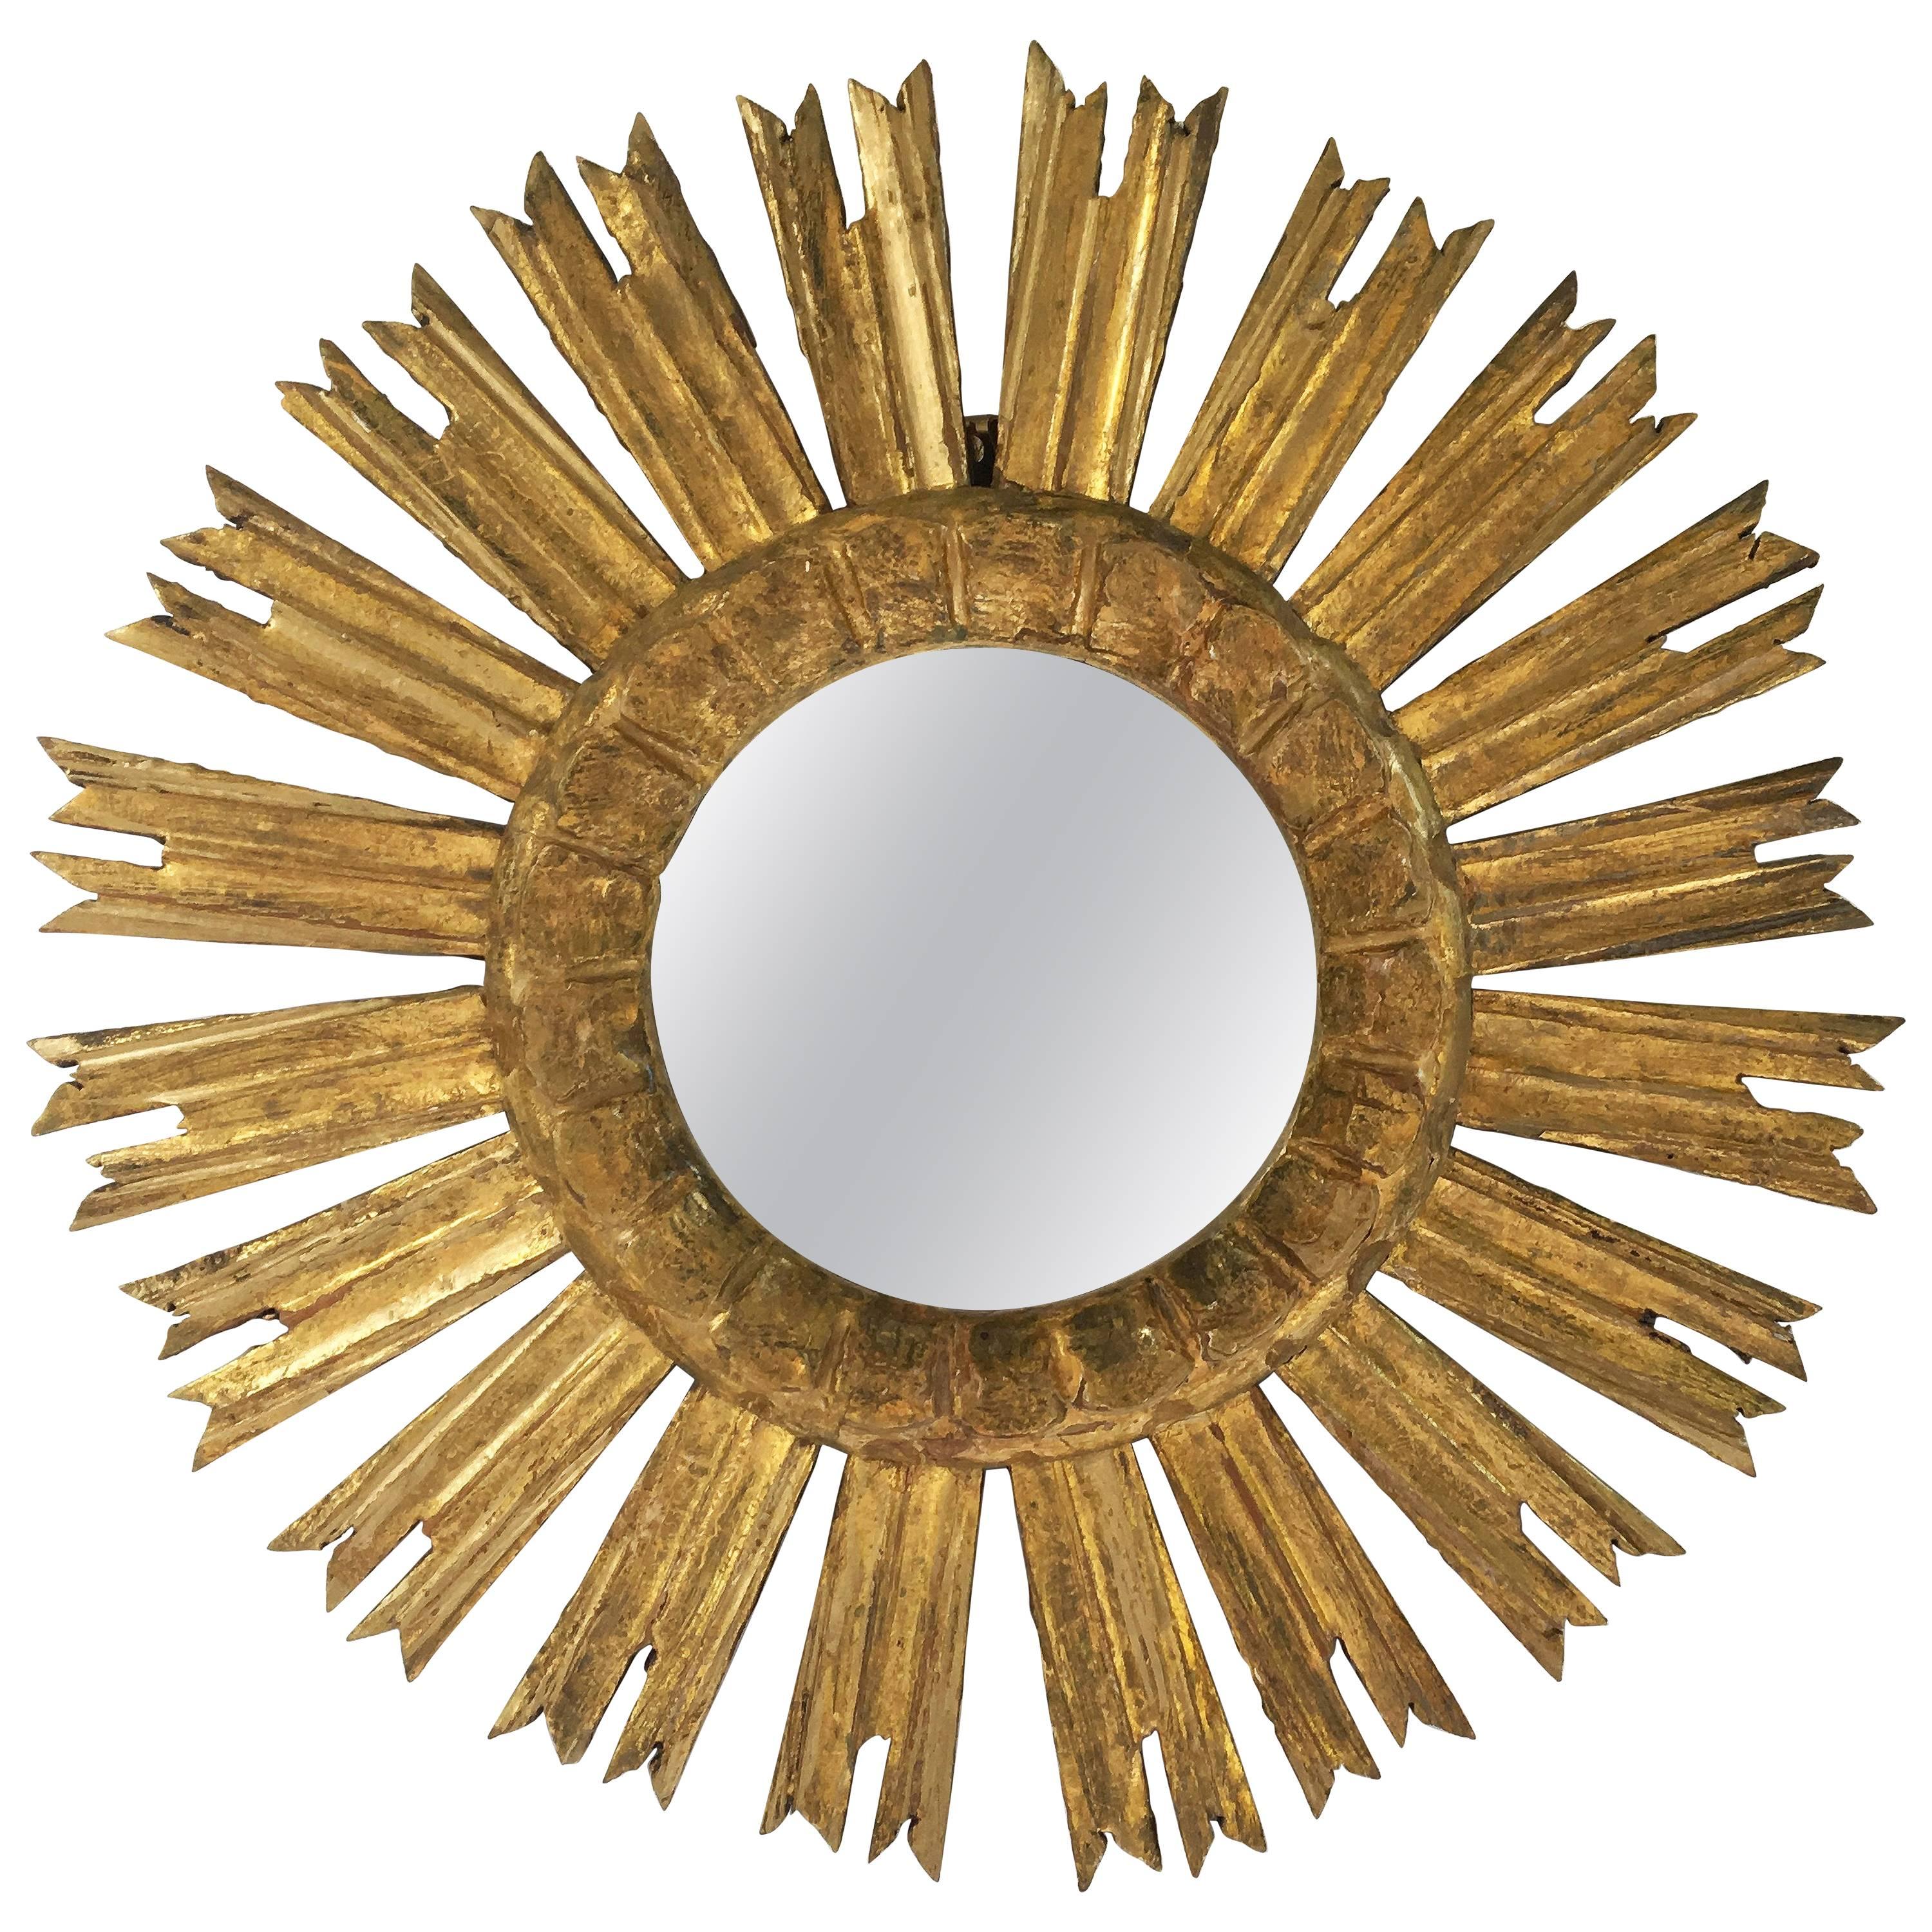 French Gilt Sunburst or Starburst Mirror (Diameter 16 1/2)